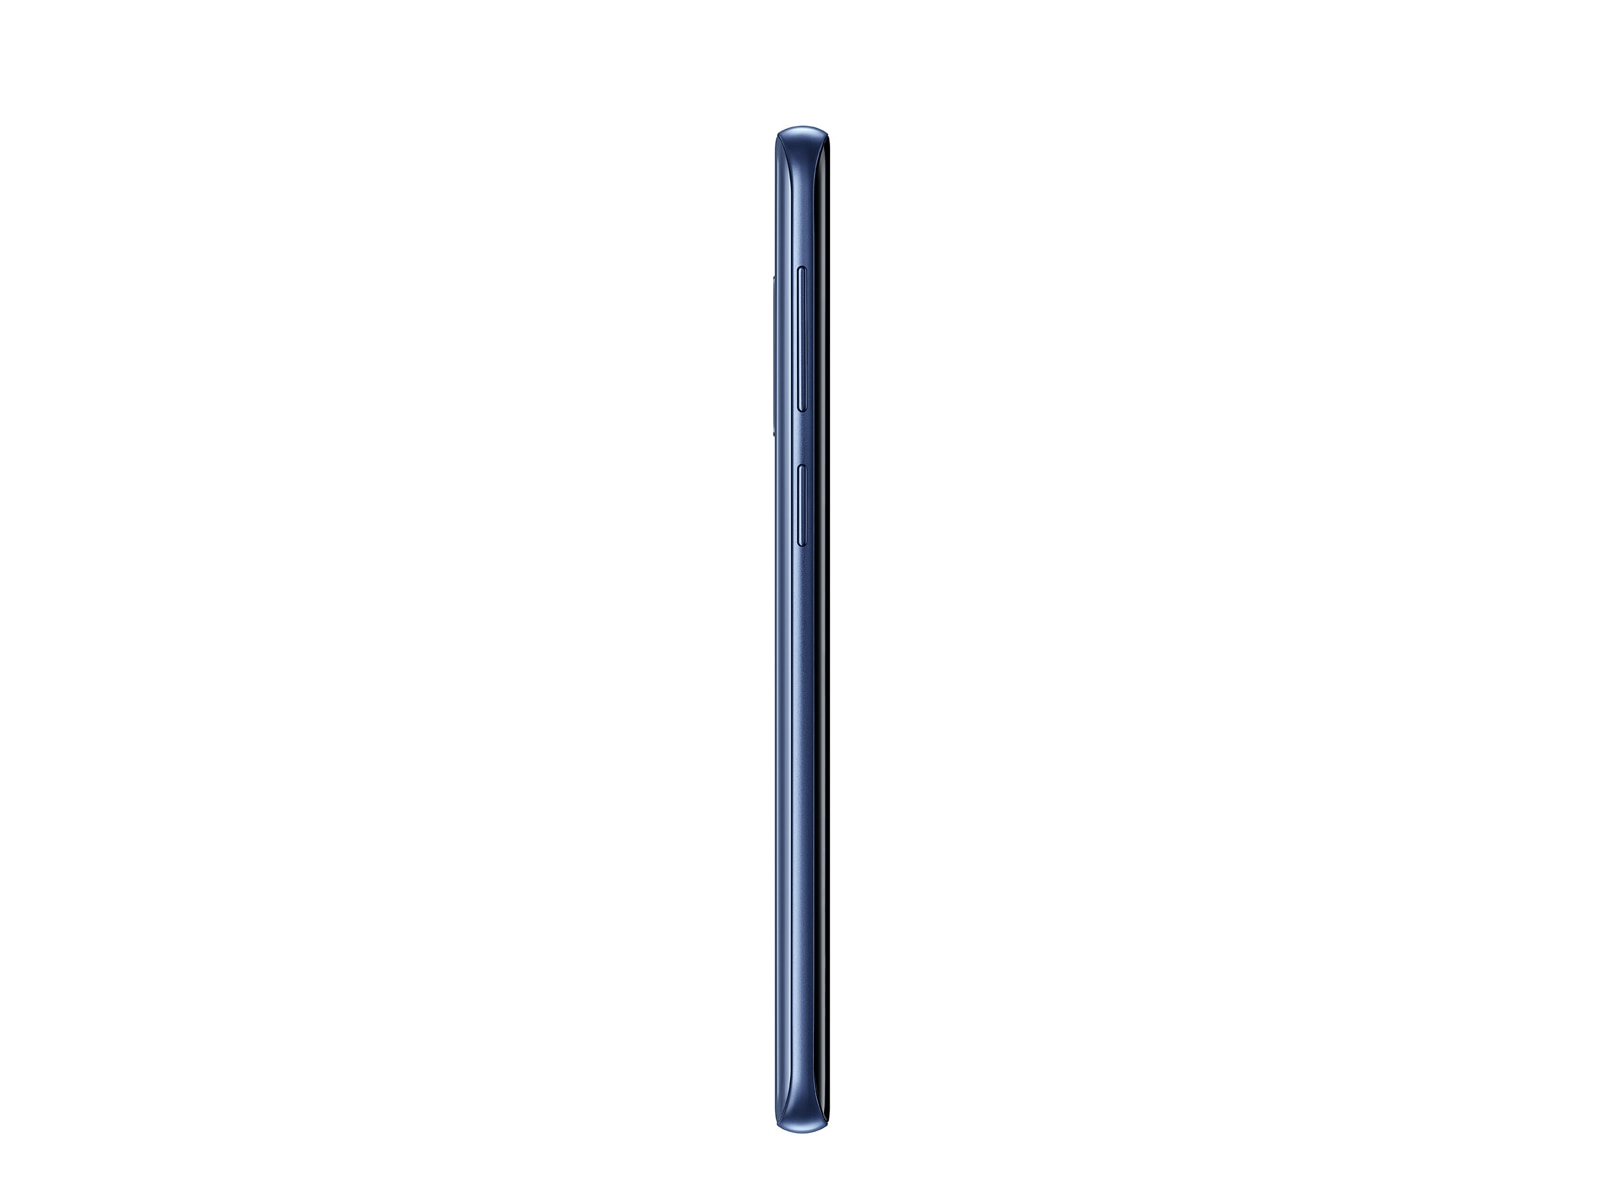 Thumbnail image of Galaxy S9 64GB (AT&T)